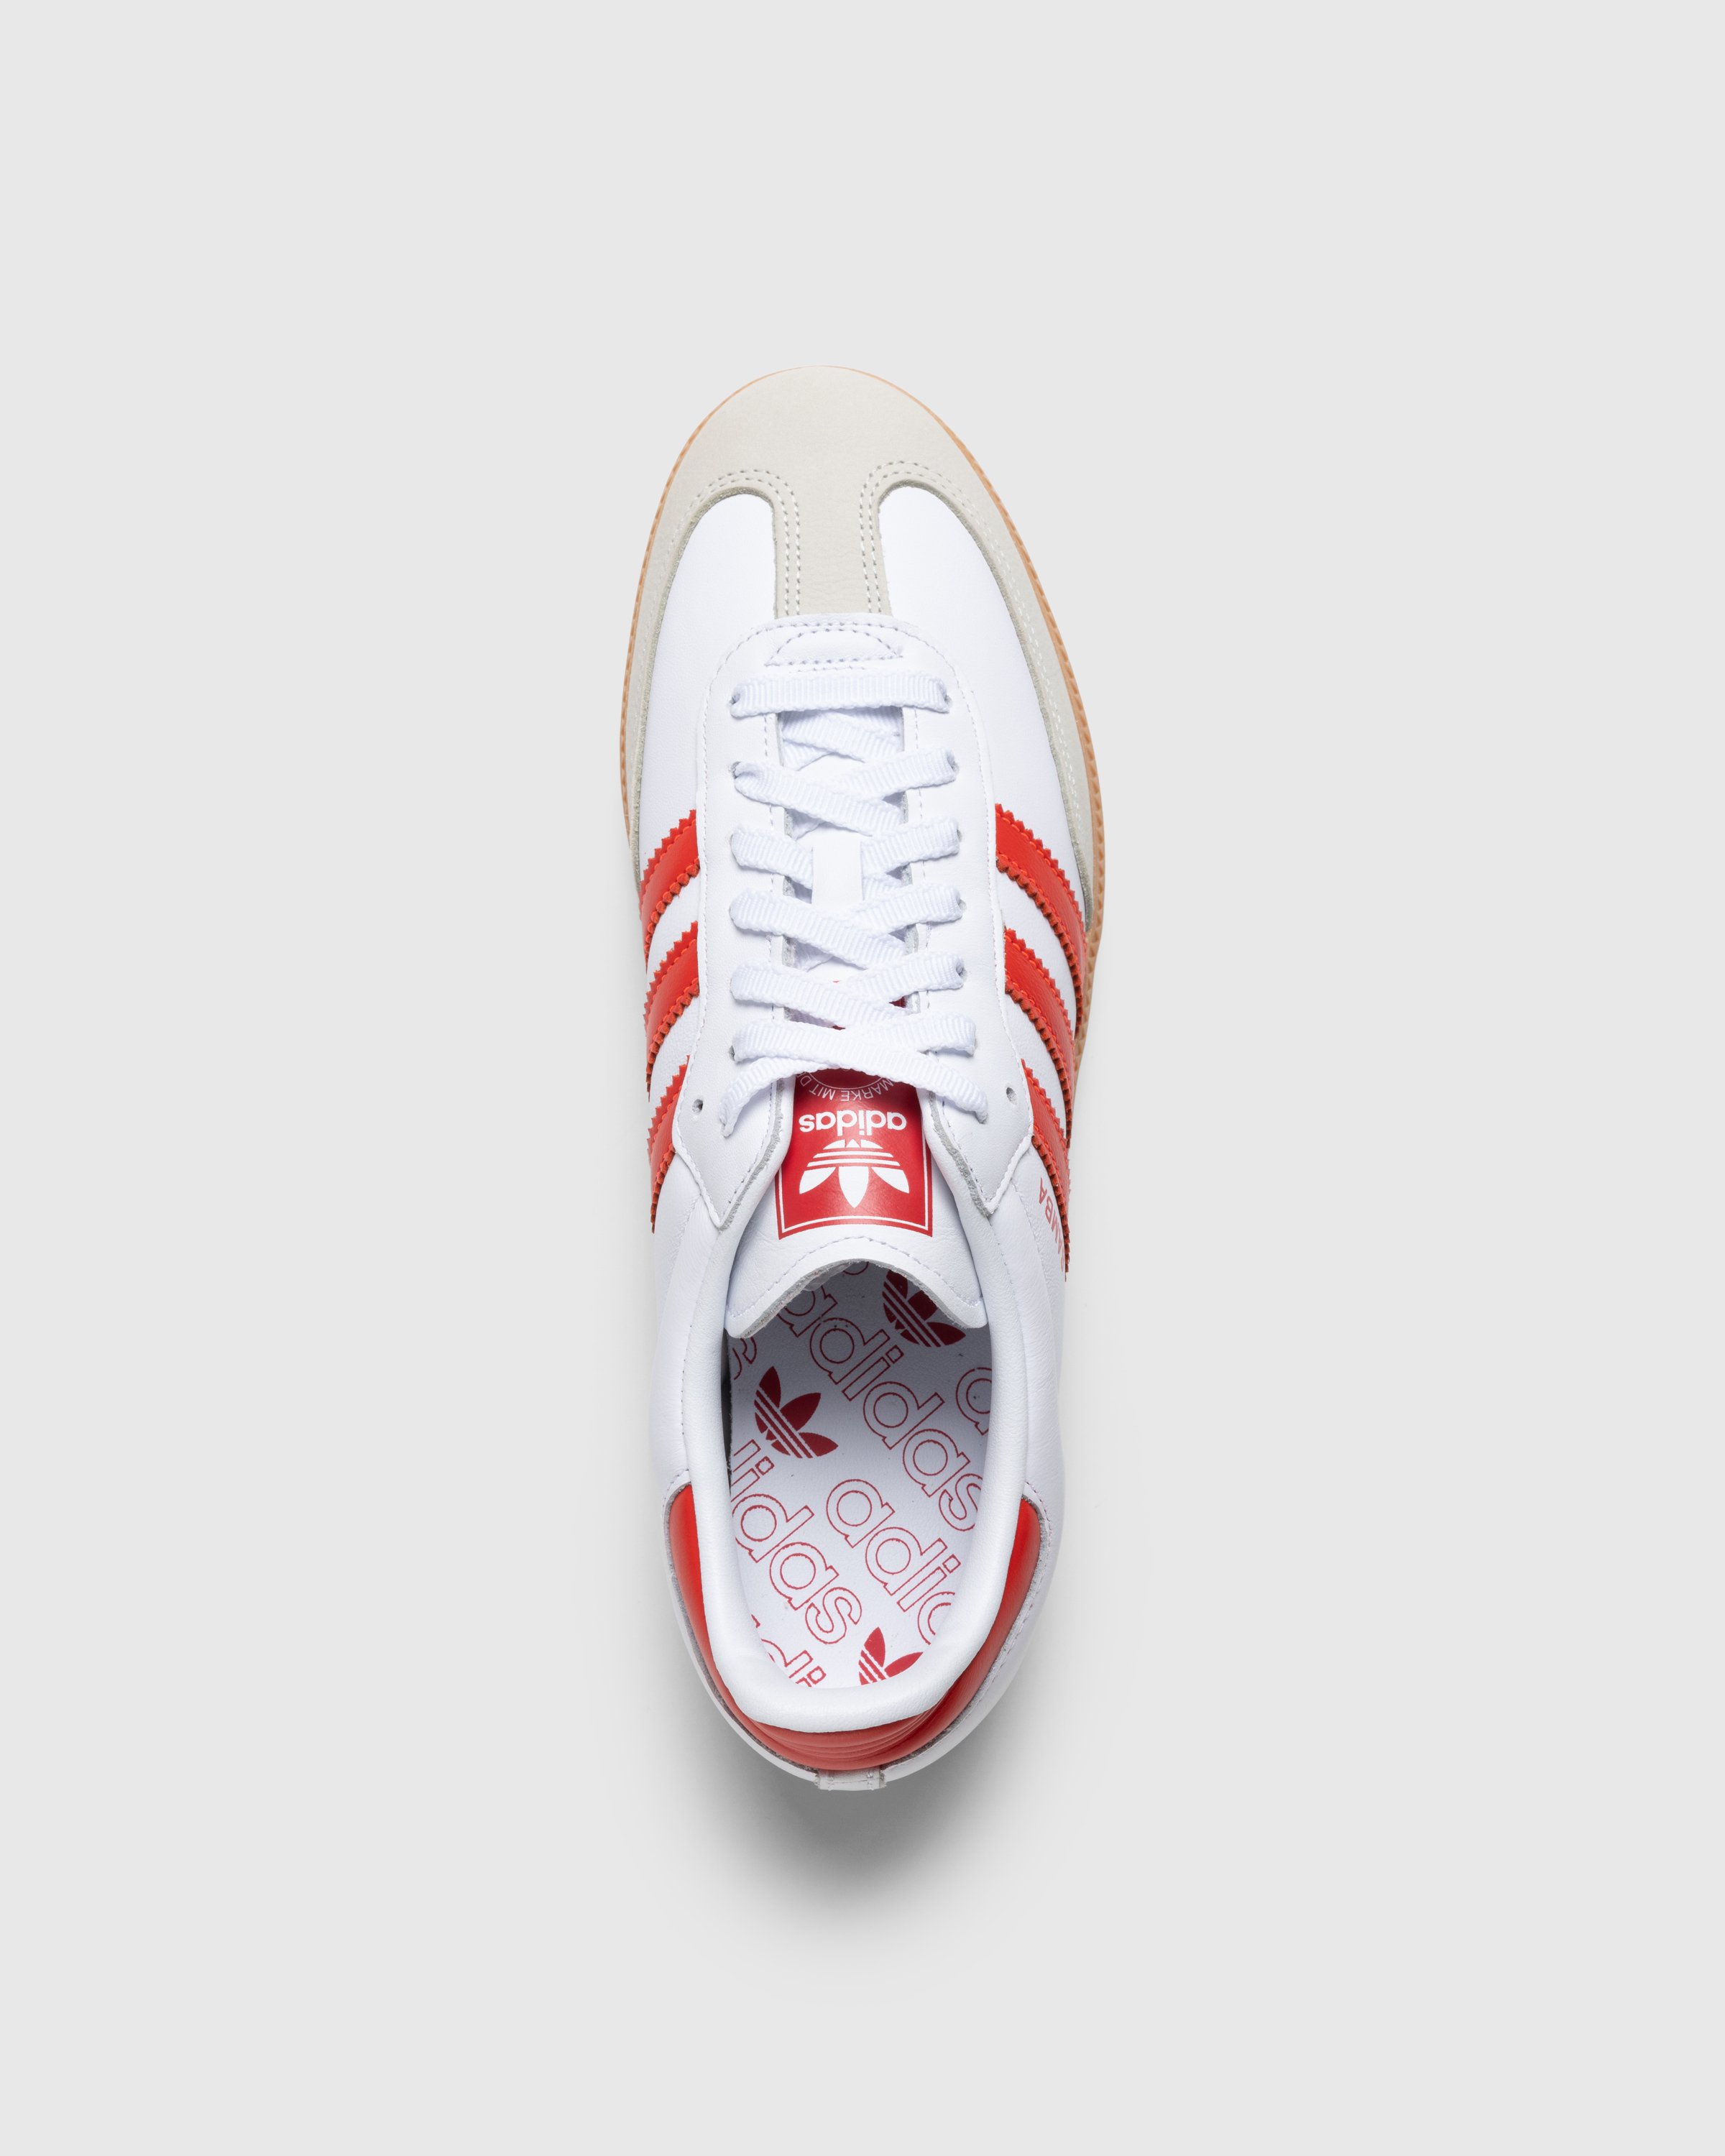 Adidas - Samba Og W          Ftwwht/Solred/Owhite - Footwear - White - Image 5